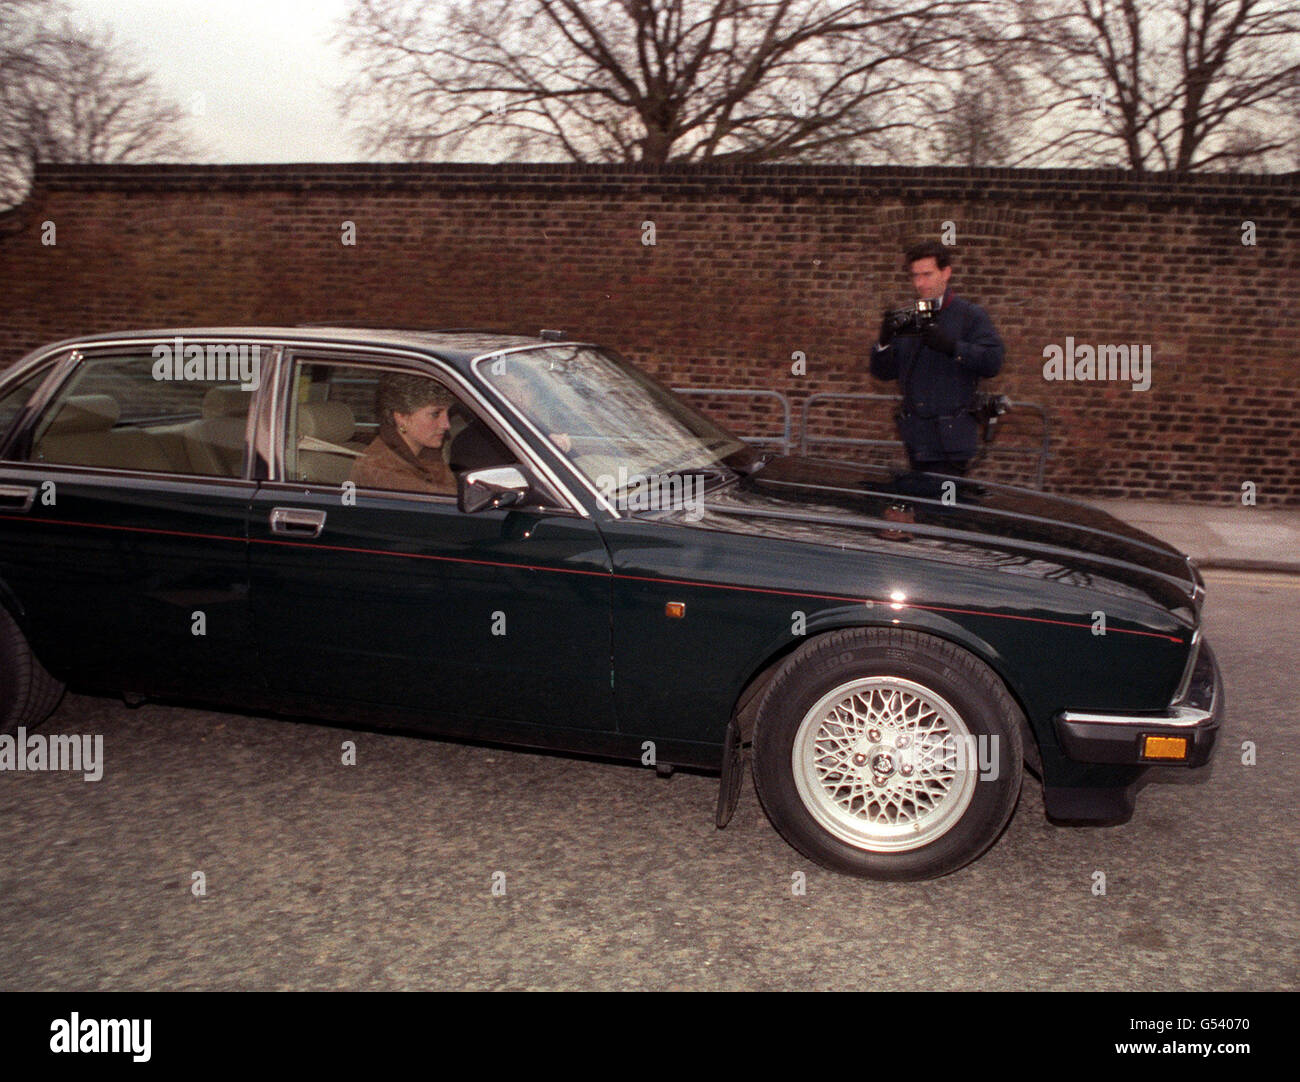 DIANA'S JAGUAR: Die Prinzessin von Wales verlässt Kensington Palace, London, in ihrem grünen Jaguar XJ6 Saloon. Die Prinzessin hat einen politischen Streit verursacht, indem sie einen Mercedes 500SL leaste, so dass sie die erste Royal ist, die ein ausländisches Auto wählt. Stockfoto